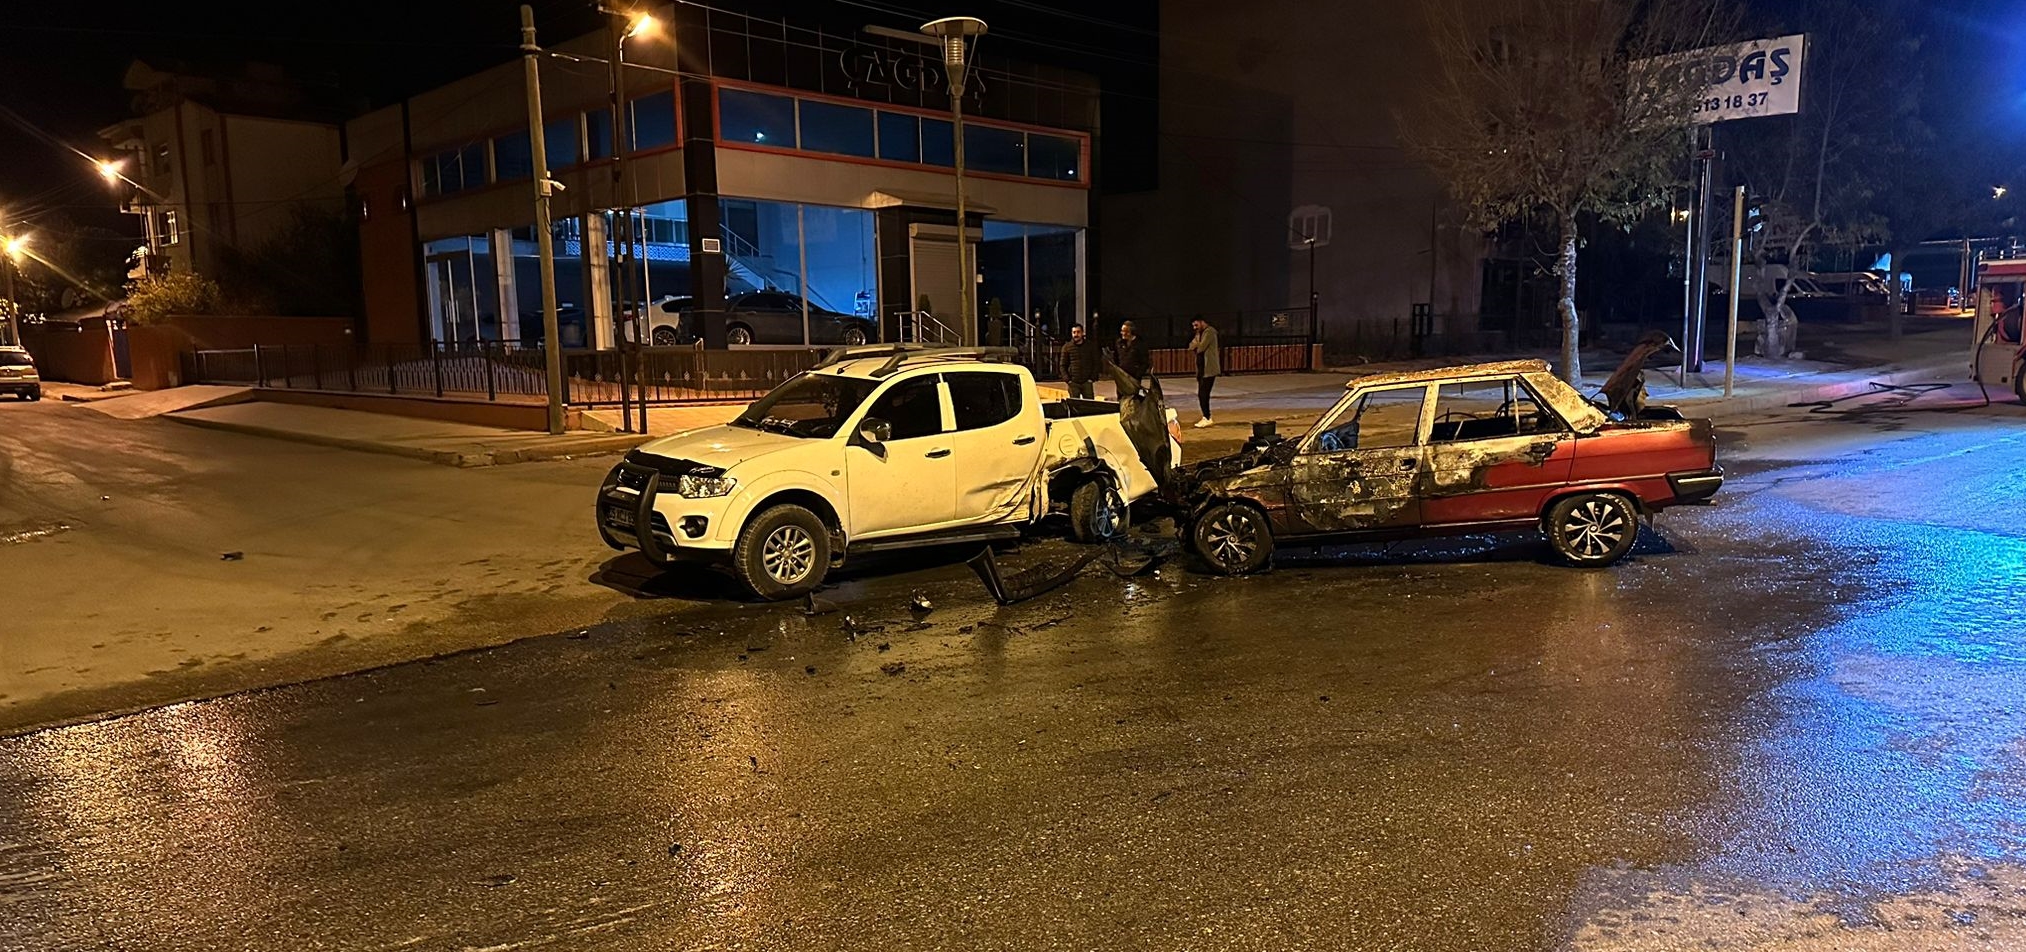 Amasya’da pikap ile çarpışan otomobil yandı, 4 kişi yaralandı